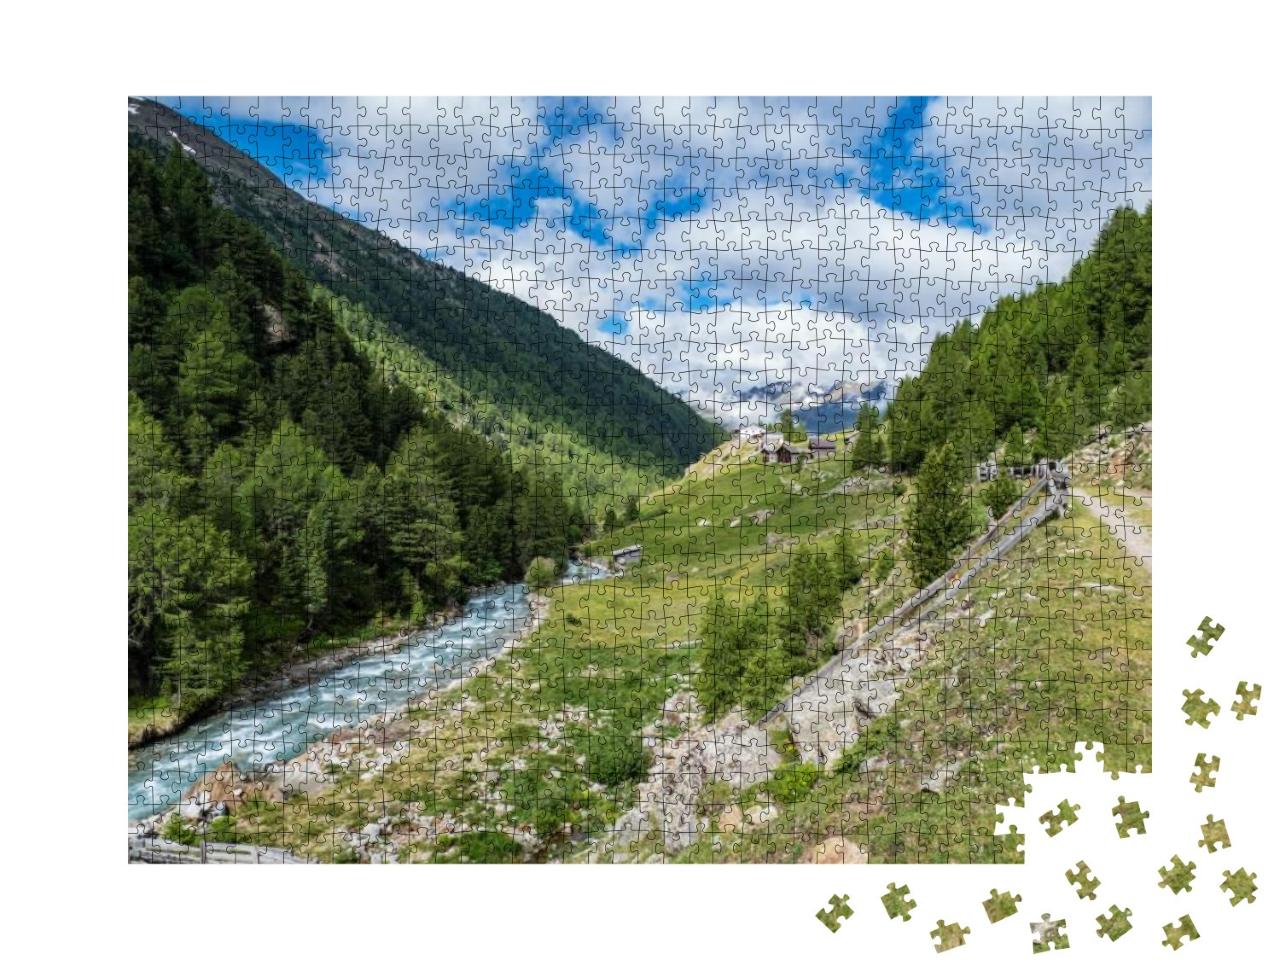 Puzzle 1000 Teile „Traumhaft schöne sommerliche Landschaft in den Ötztaler Alpen“